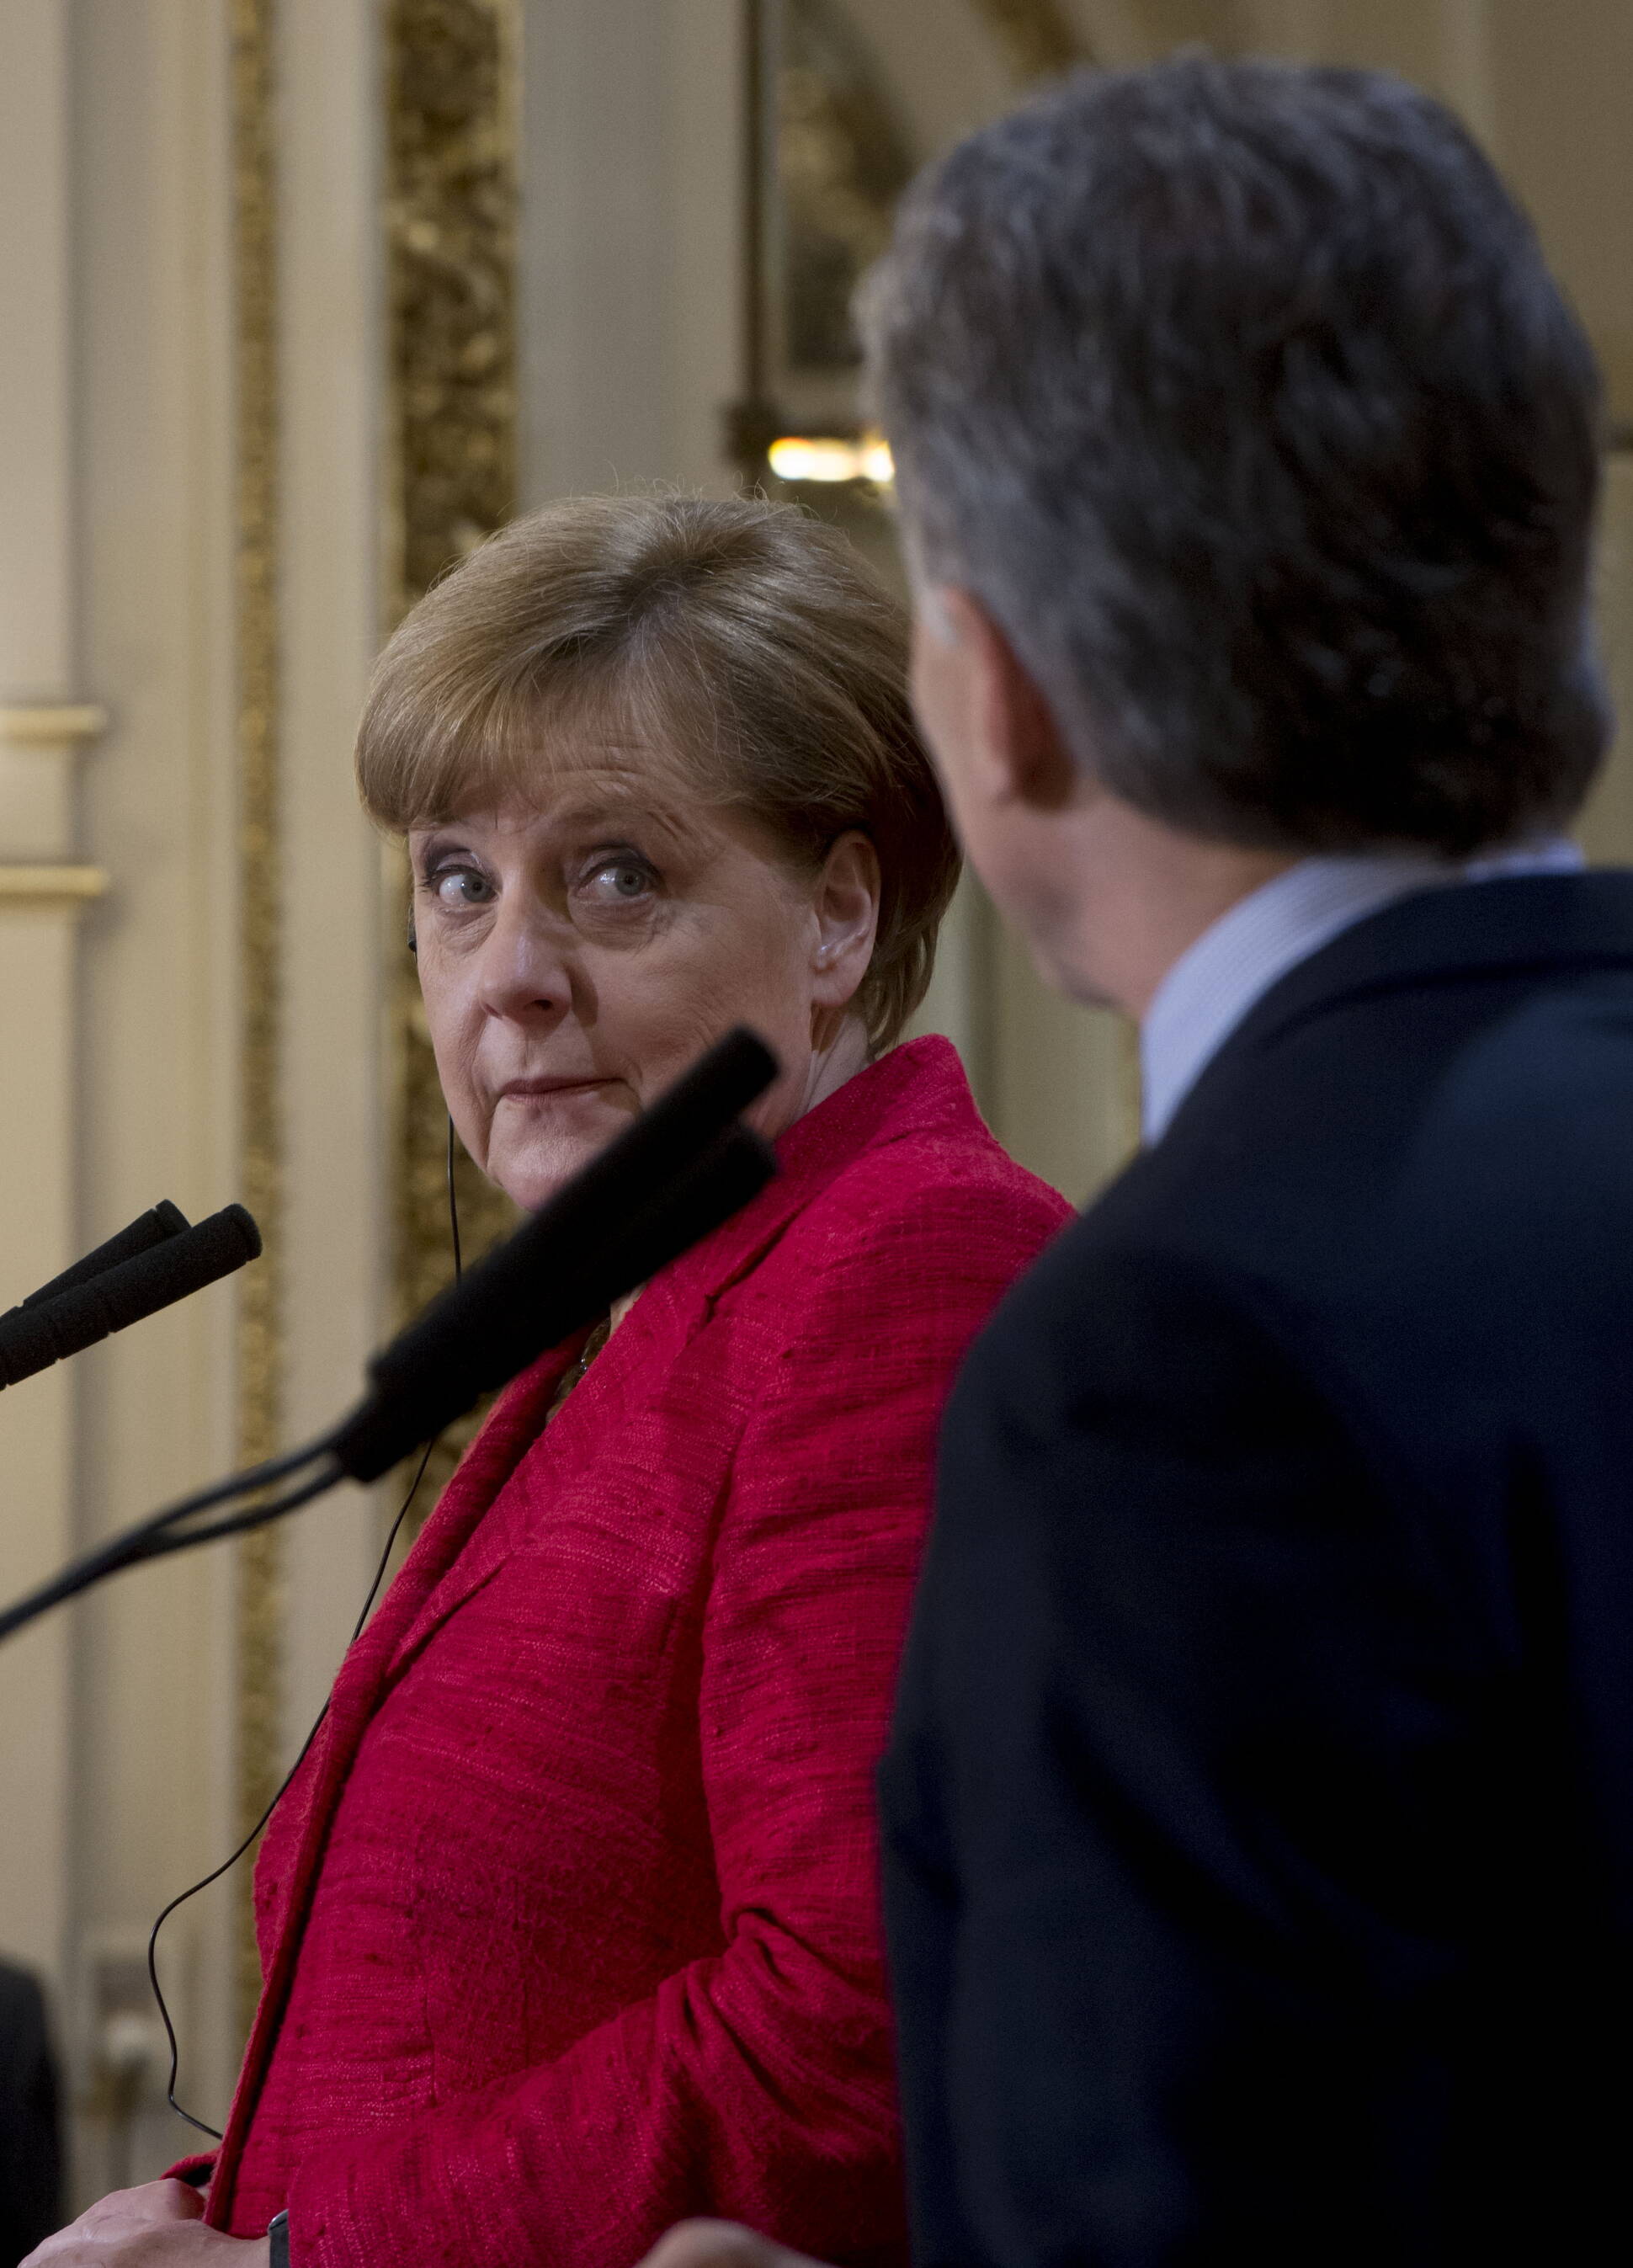 Macri y Merkel acordaron fortalecer la relación bilateral y ratificaron la agenda del G-20